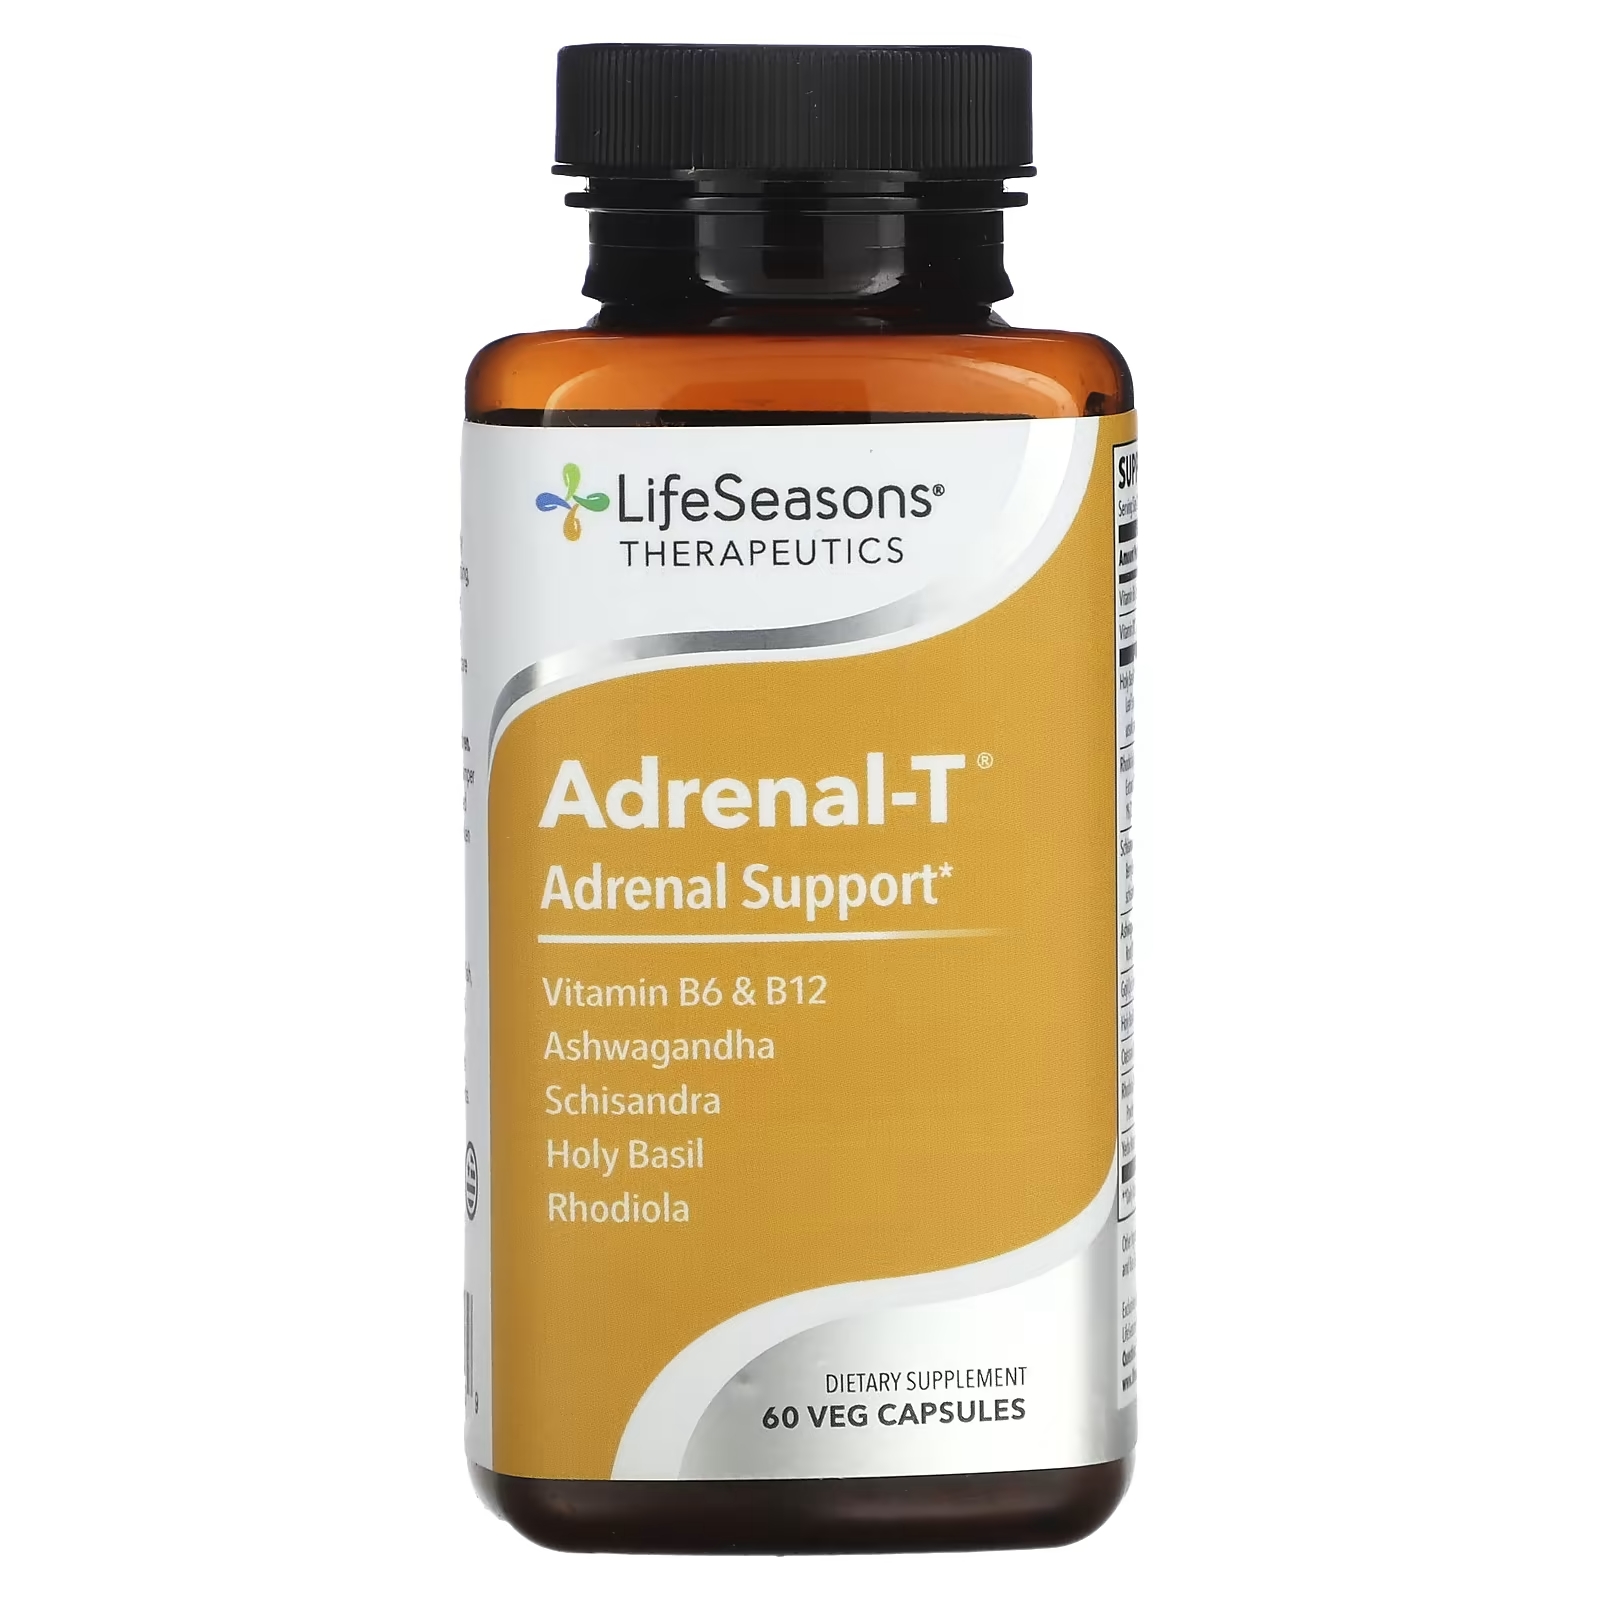 LifeSeasons Adrenal-T адреналиновая поддержка, 60 вегетарианских капсул